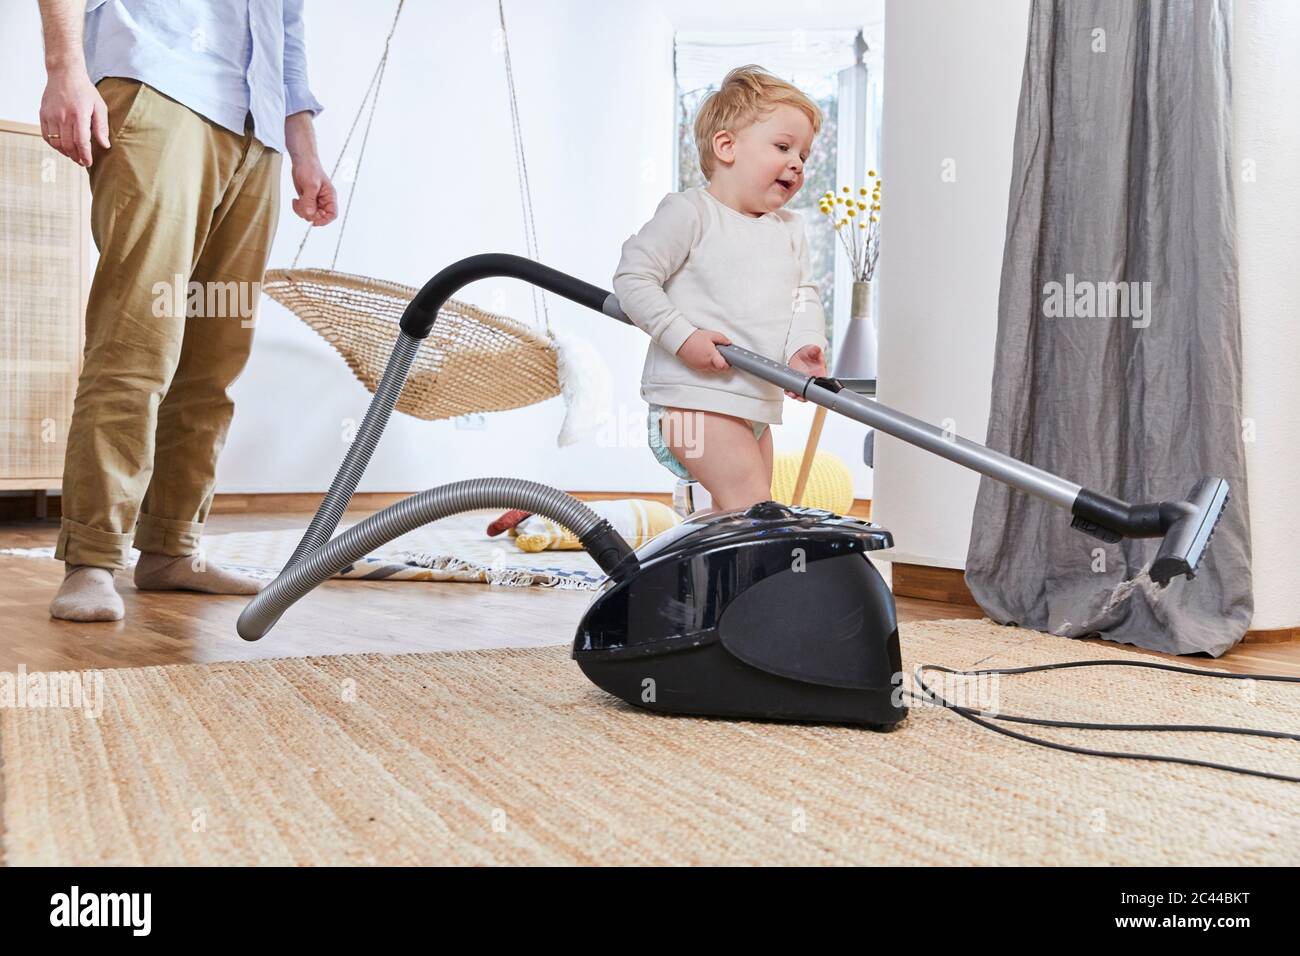 Niedlicher Baby Junge Halt Staubsauger Wahrend Er Zu Hause Auf Dem Teppich Steht Stockfotografie Alamy